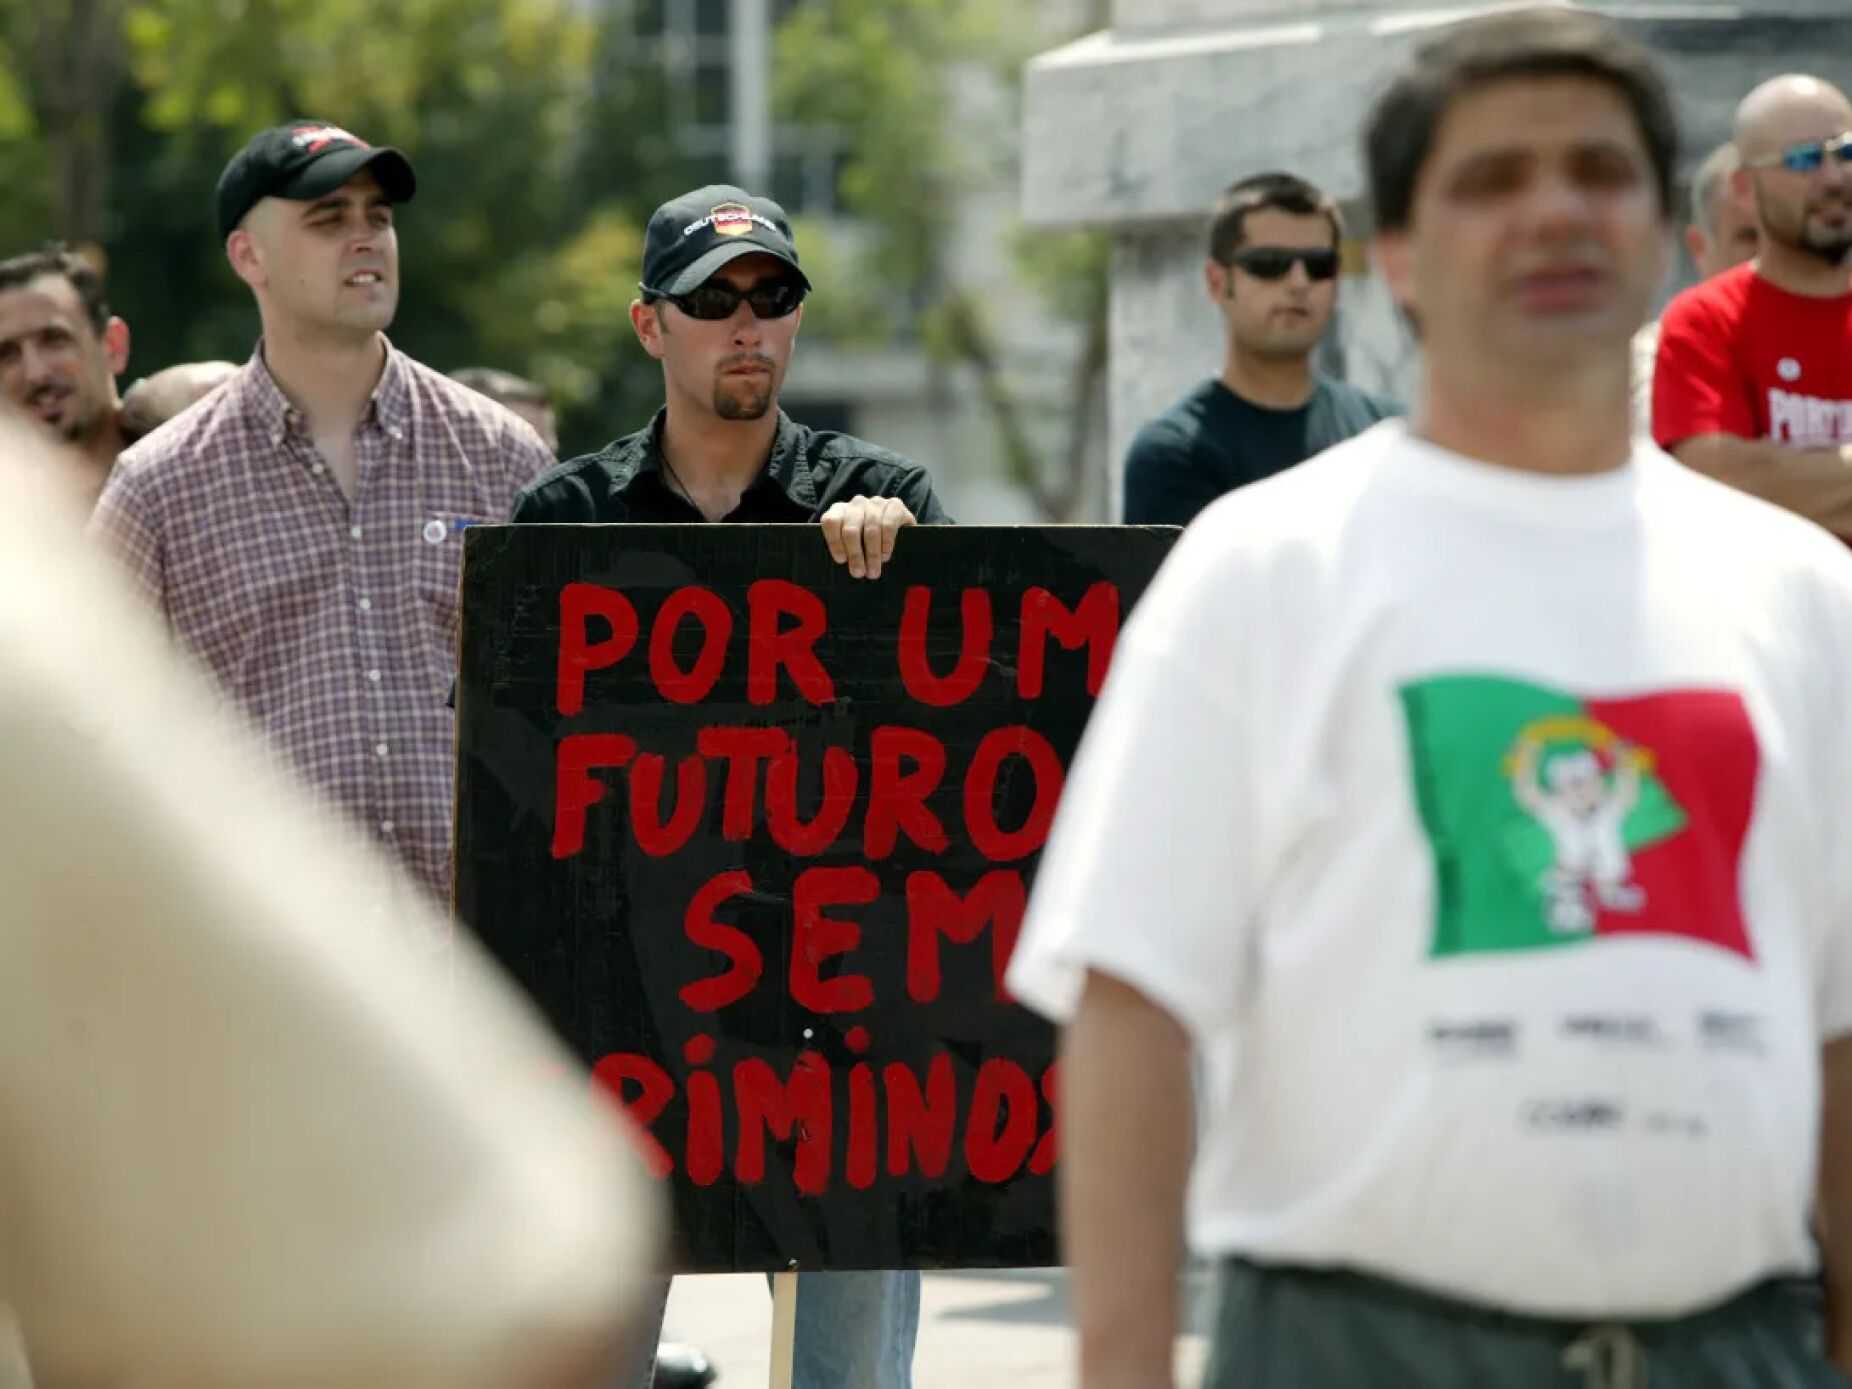 Tribunal administrativo de Lisboa confirma proibição da manifestação de extrema-direita